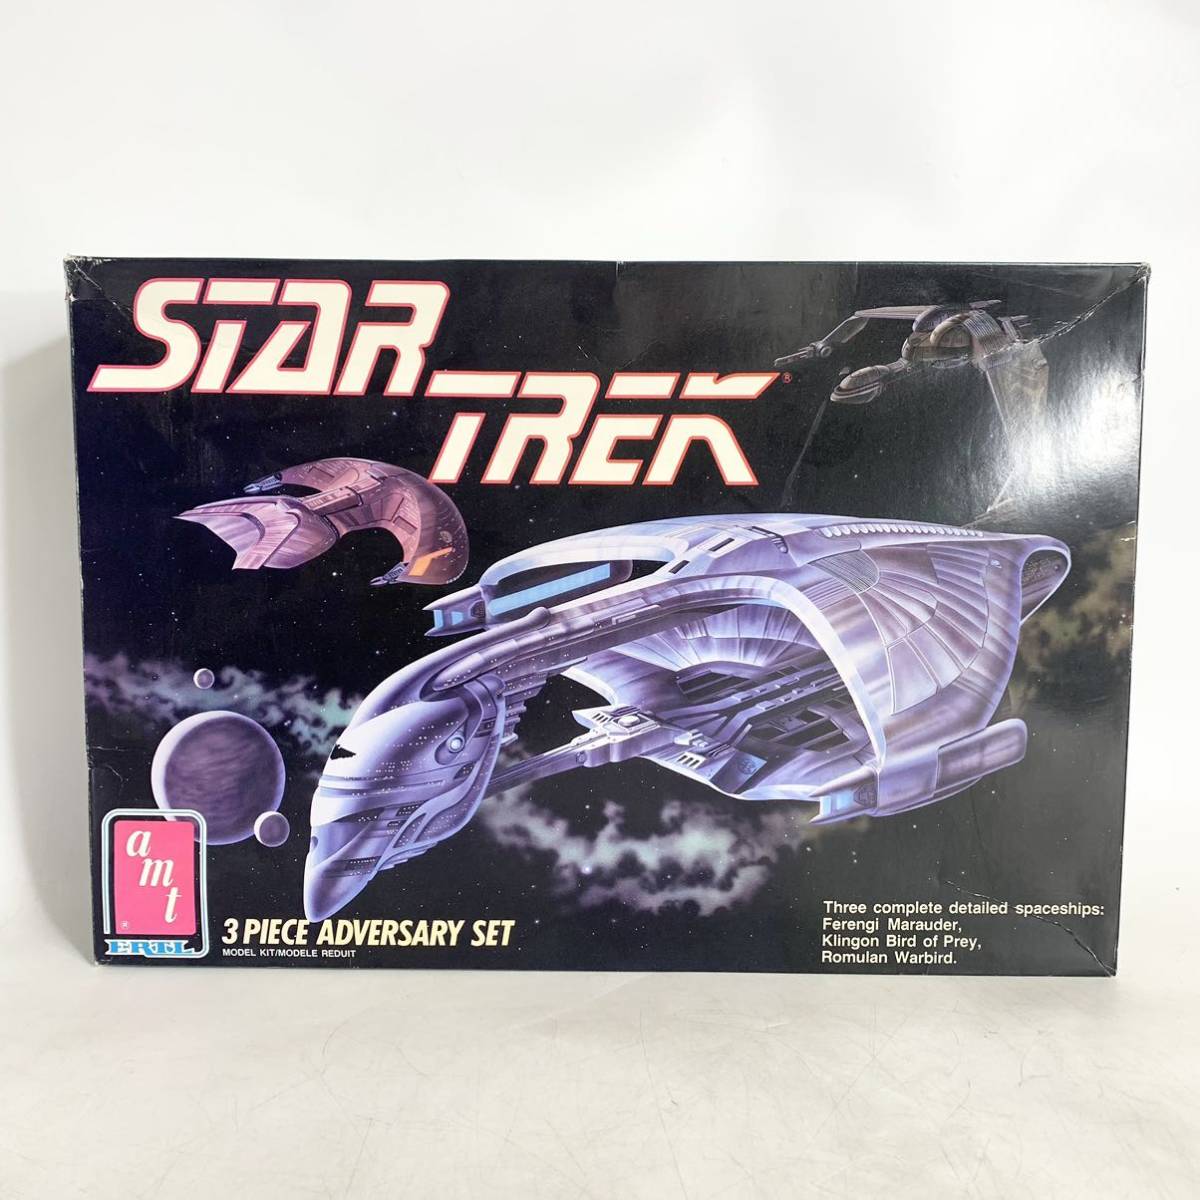  не собран amt ERTL Star Trek STAR TREK 3PIECE ADVERSARY SET пластиковая модель 6858 текущее состояние товар 